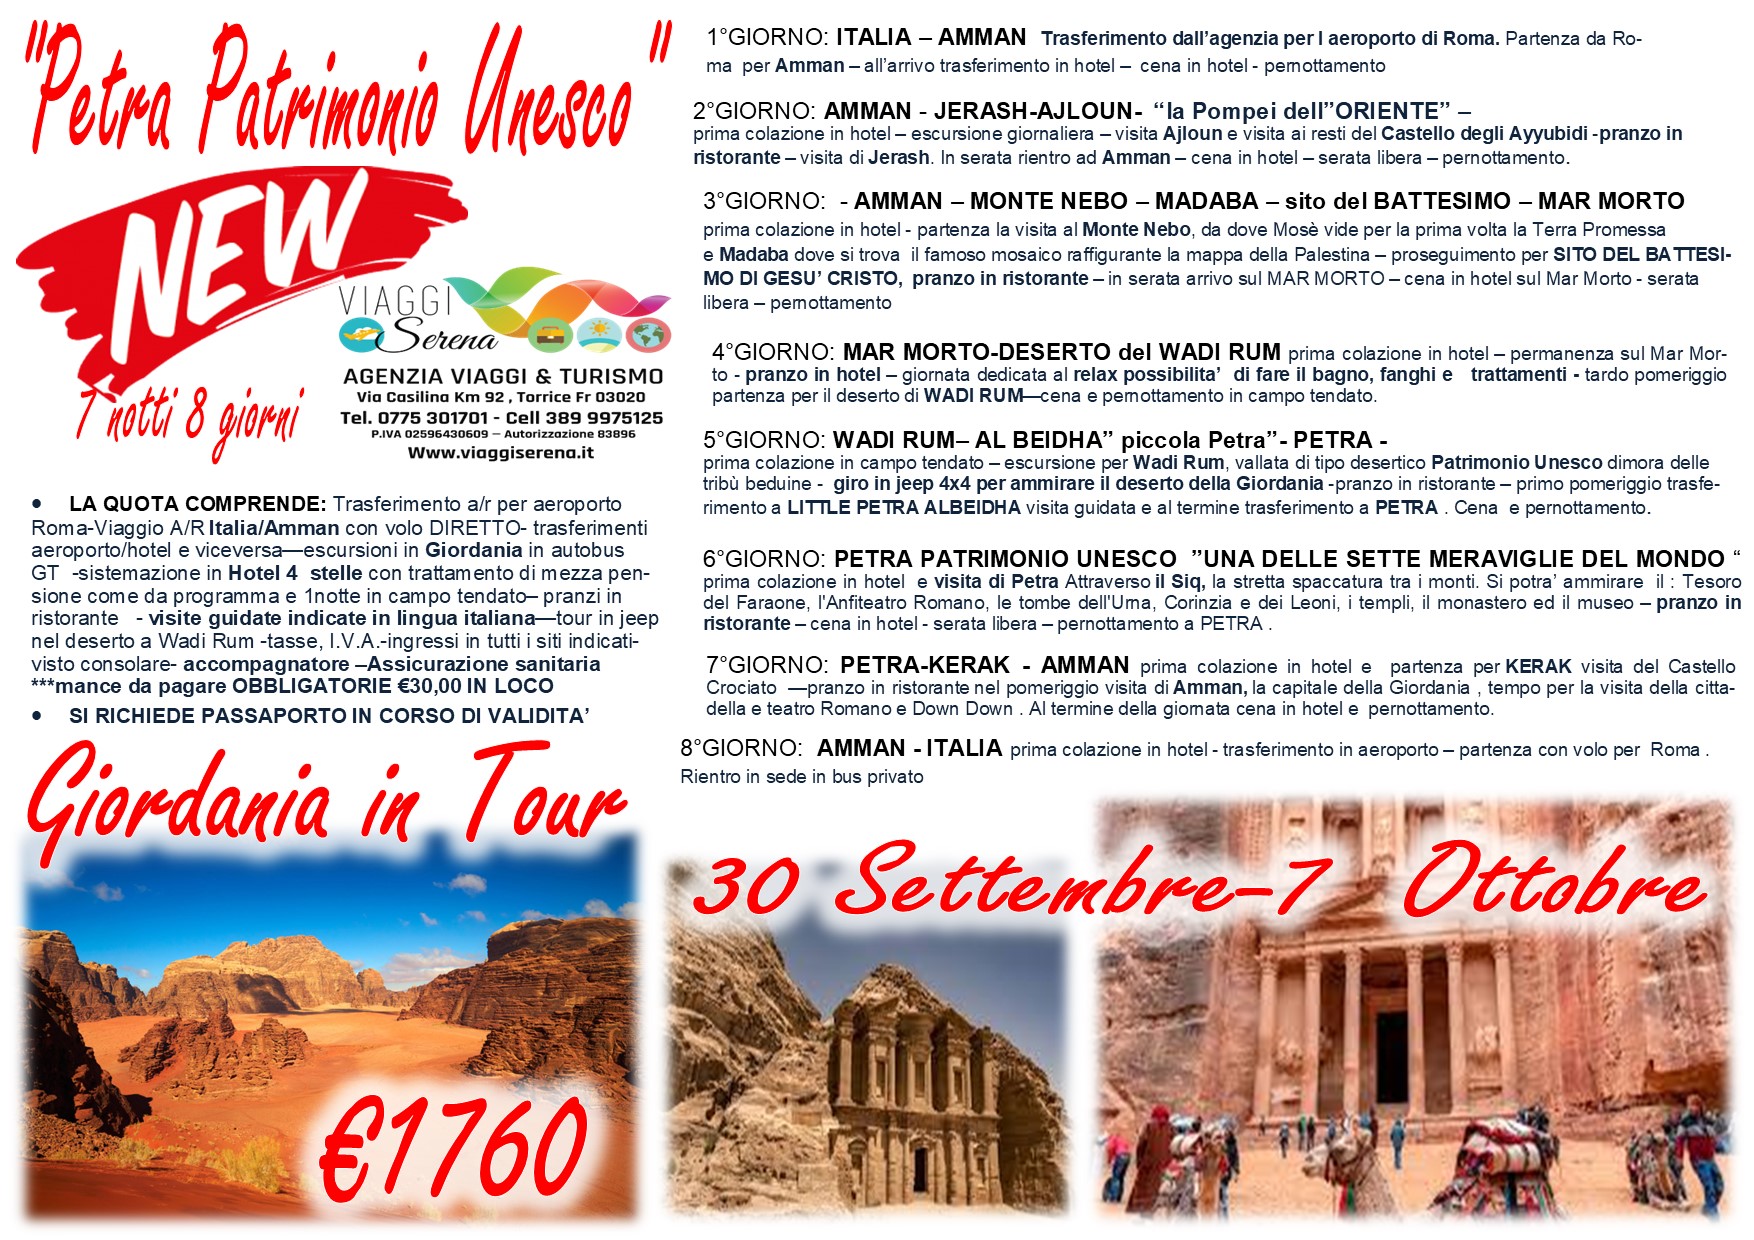 Viaggi di Gruppo: Speciale Data Tour Giordania “Speciale Petra” 30 Settembre- 7 Ottobre  € 1760,00